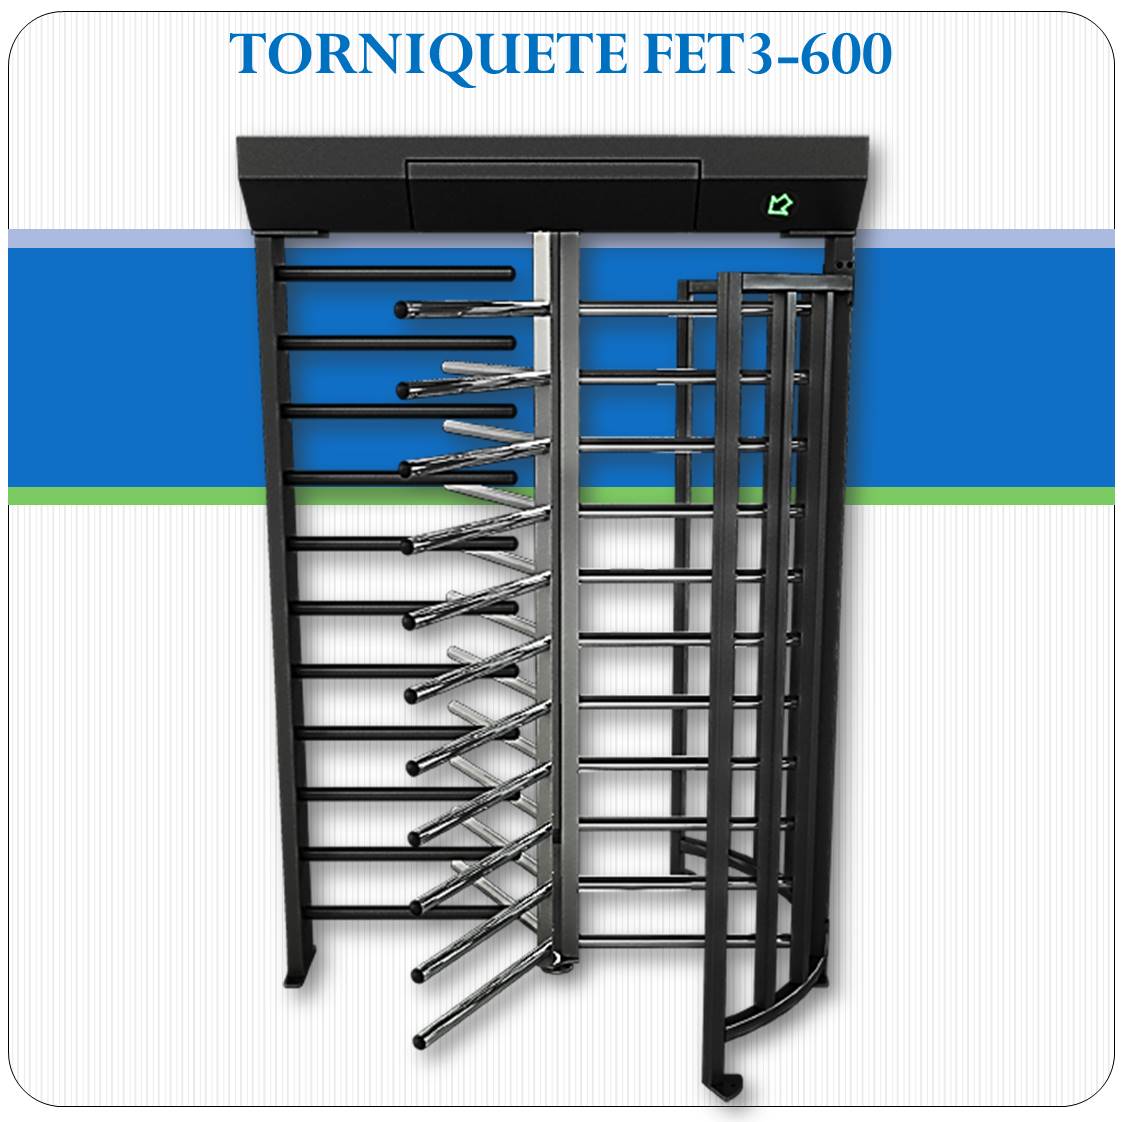 Torniquete FET3-600